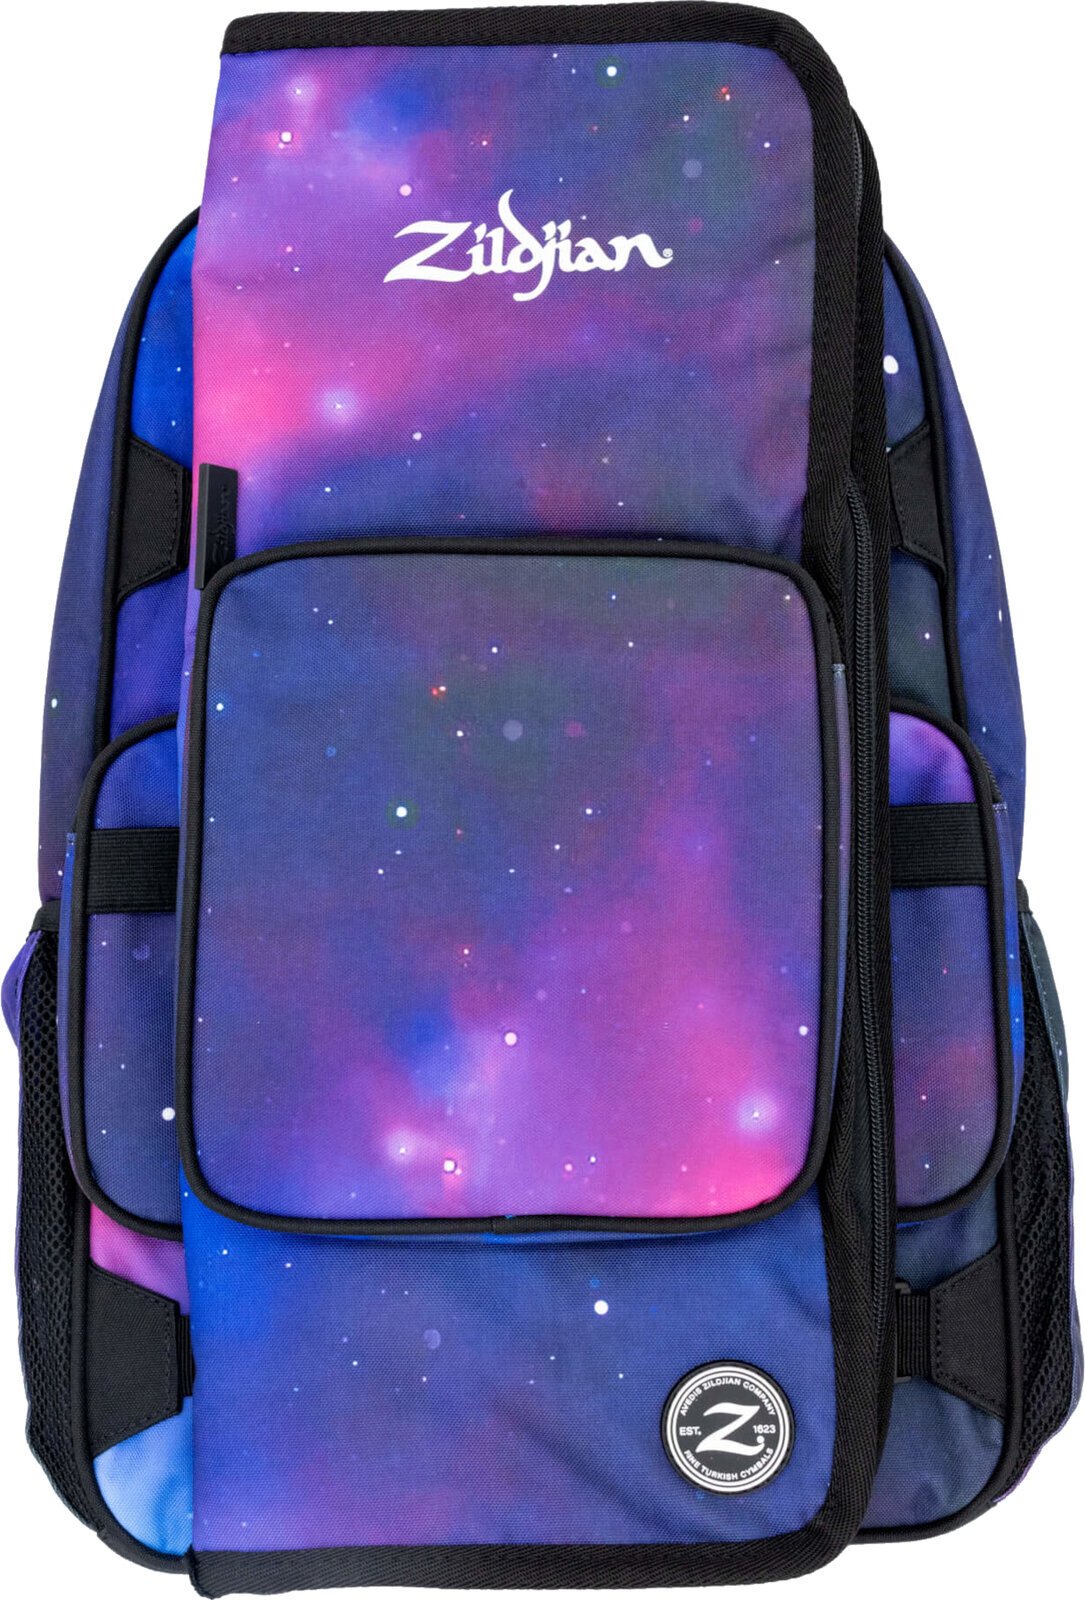 Tasche für Schlagzeugstock Zildjian Student Backpack Purple Galaxy Tasche für Schlagzeugstock